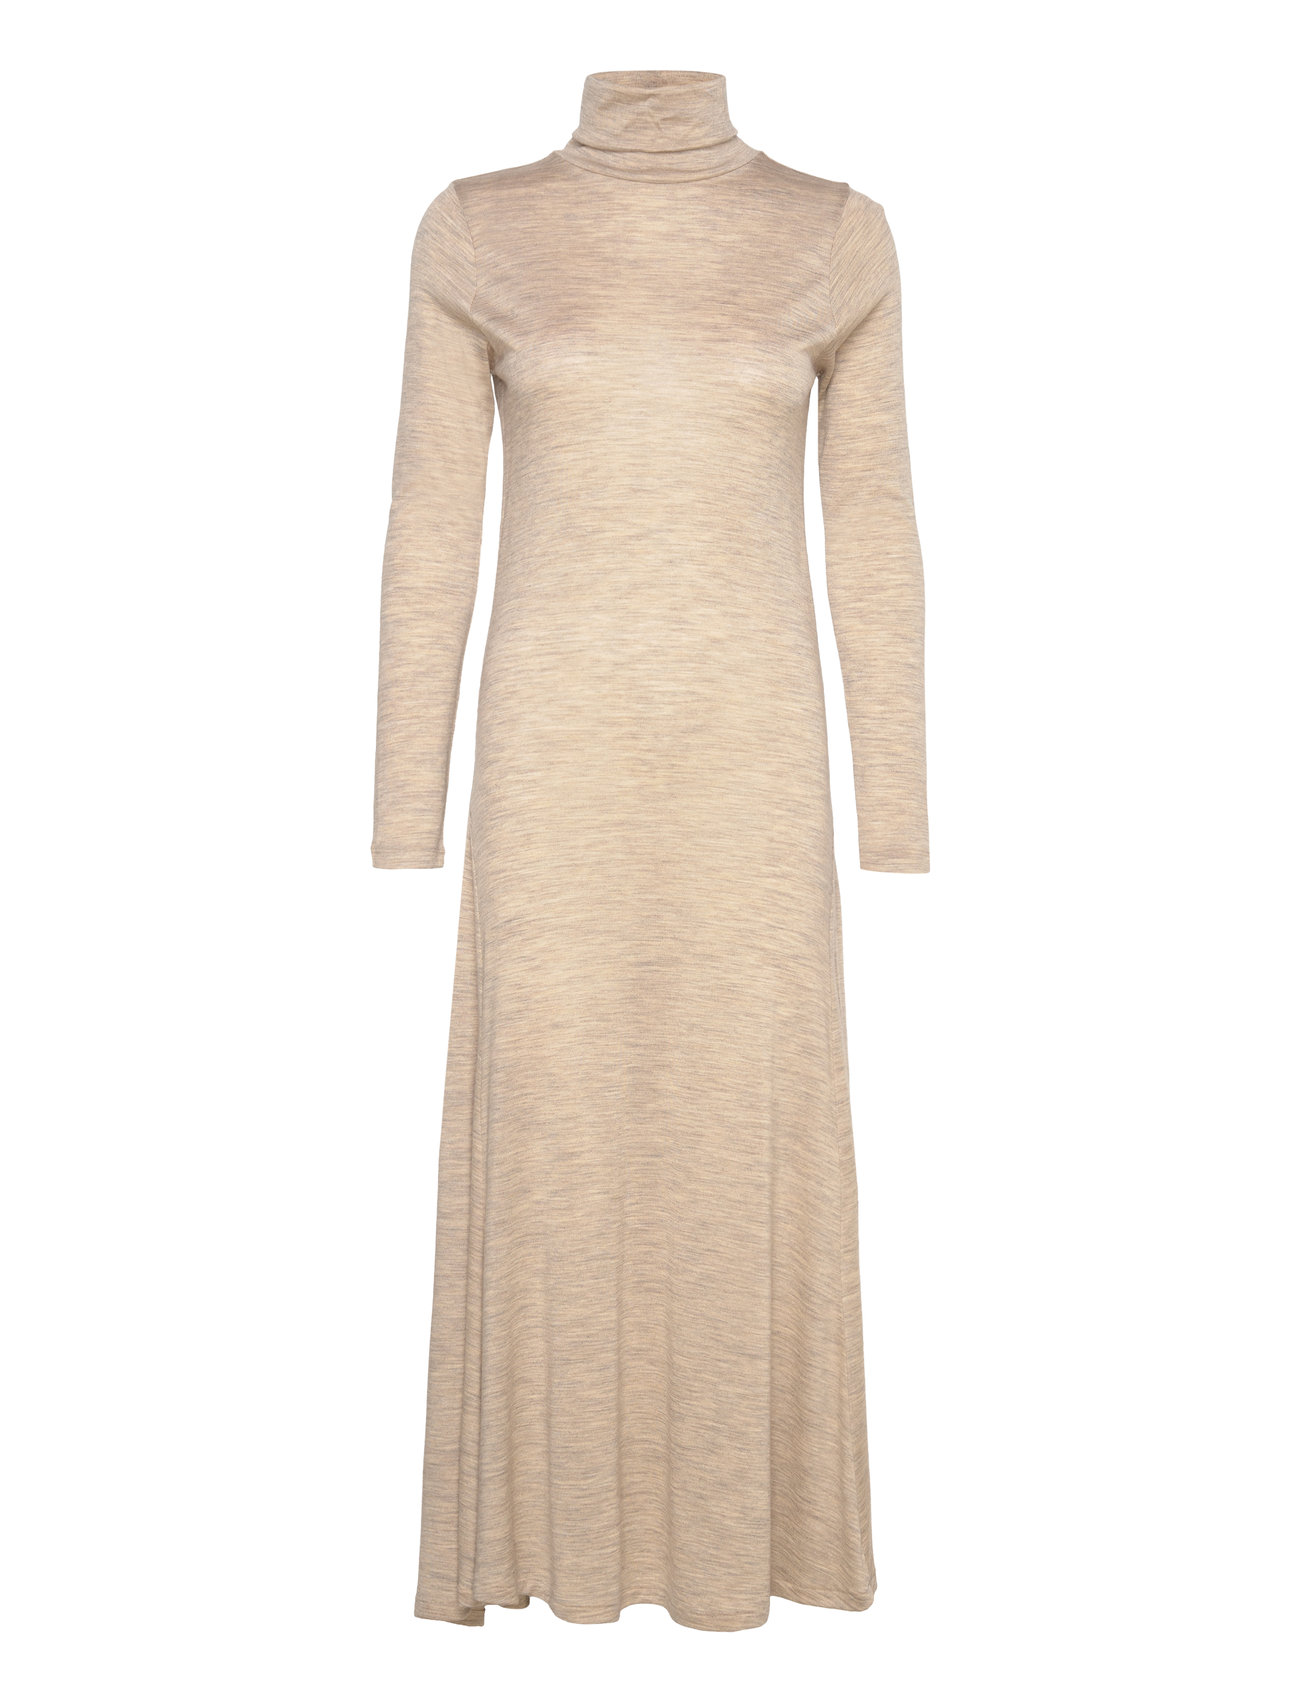 Wool-Blend Turtleneck Dress Maxiklänning Festklänning Beige Polo Ralph Lauren